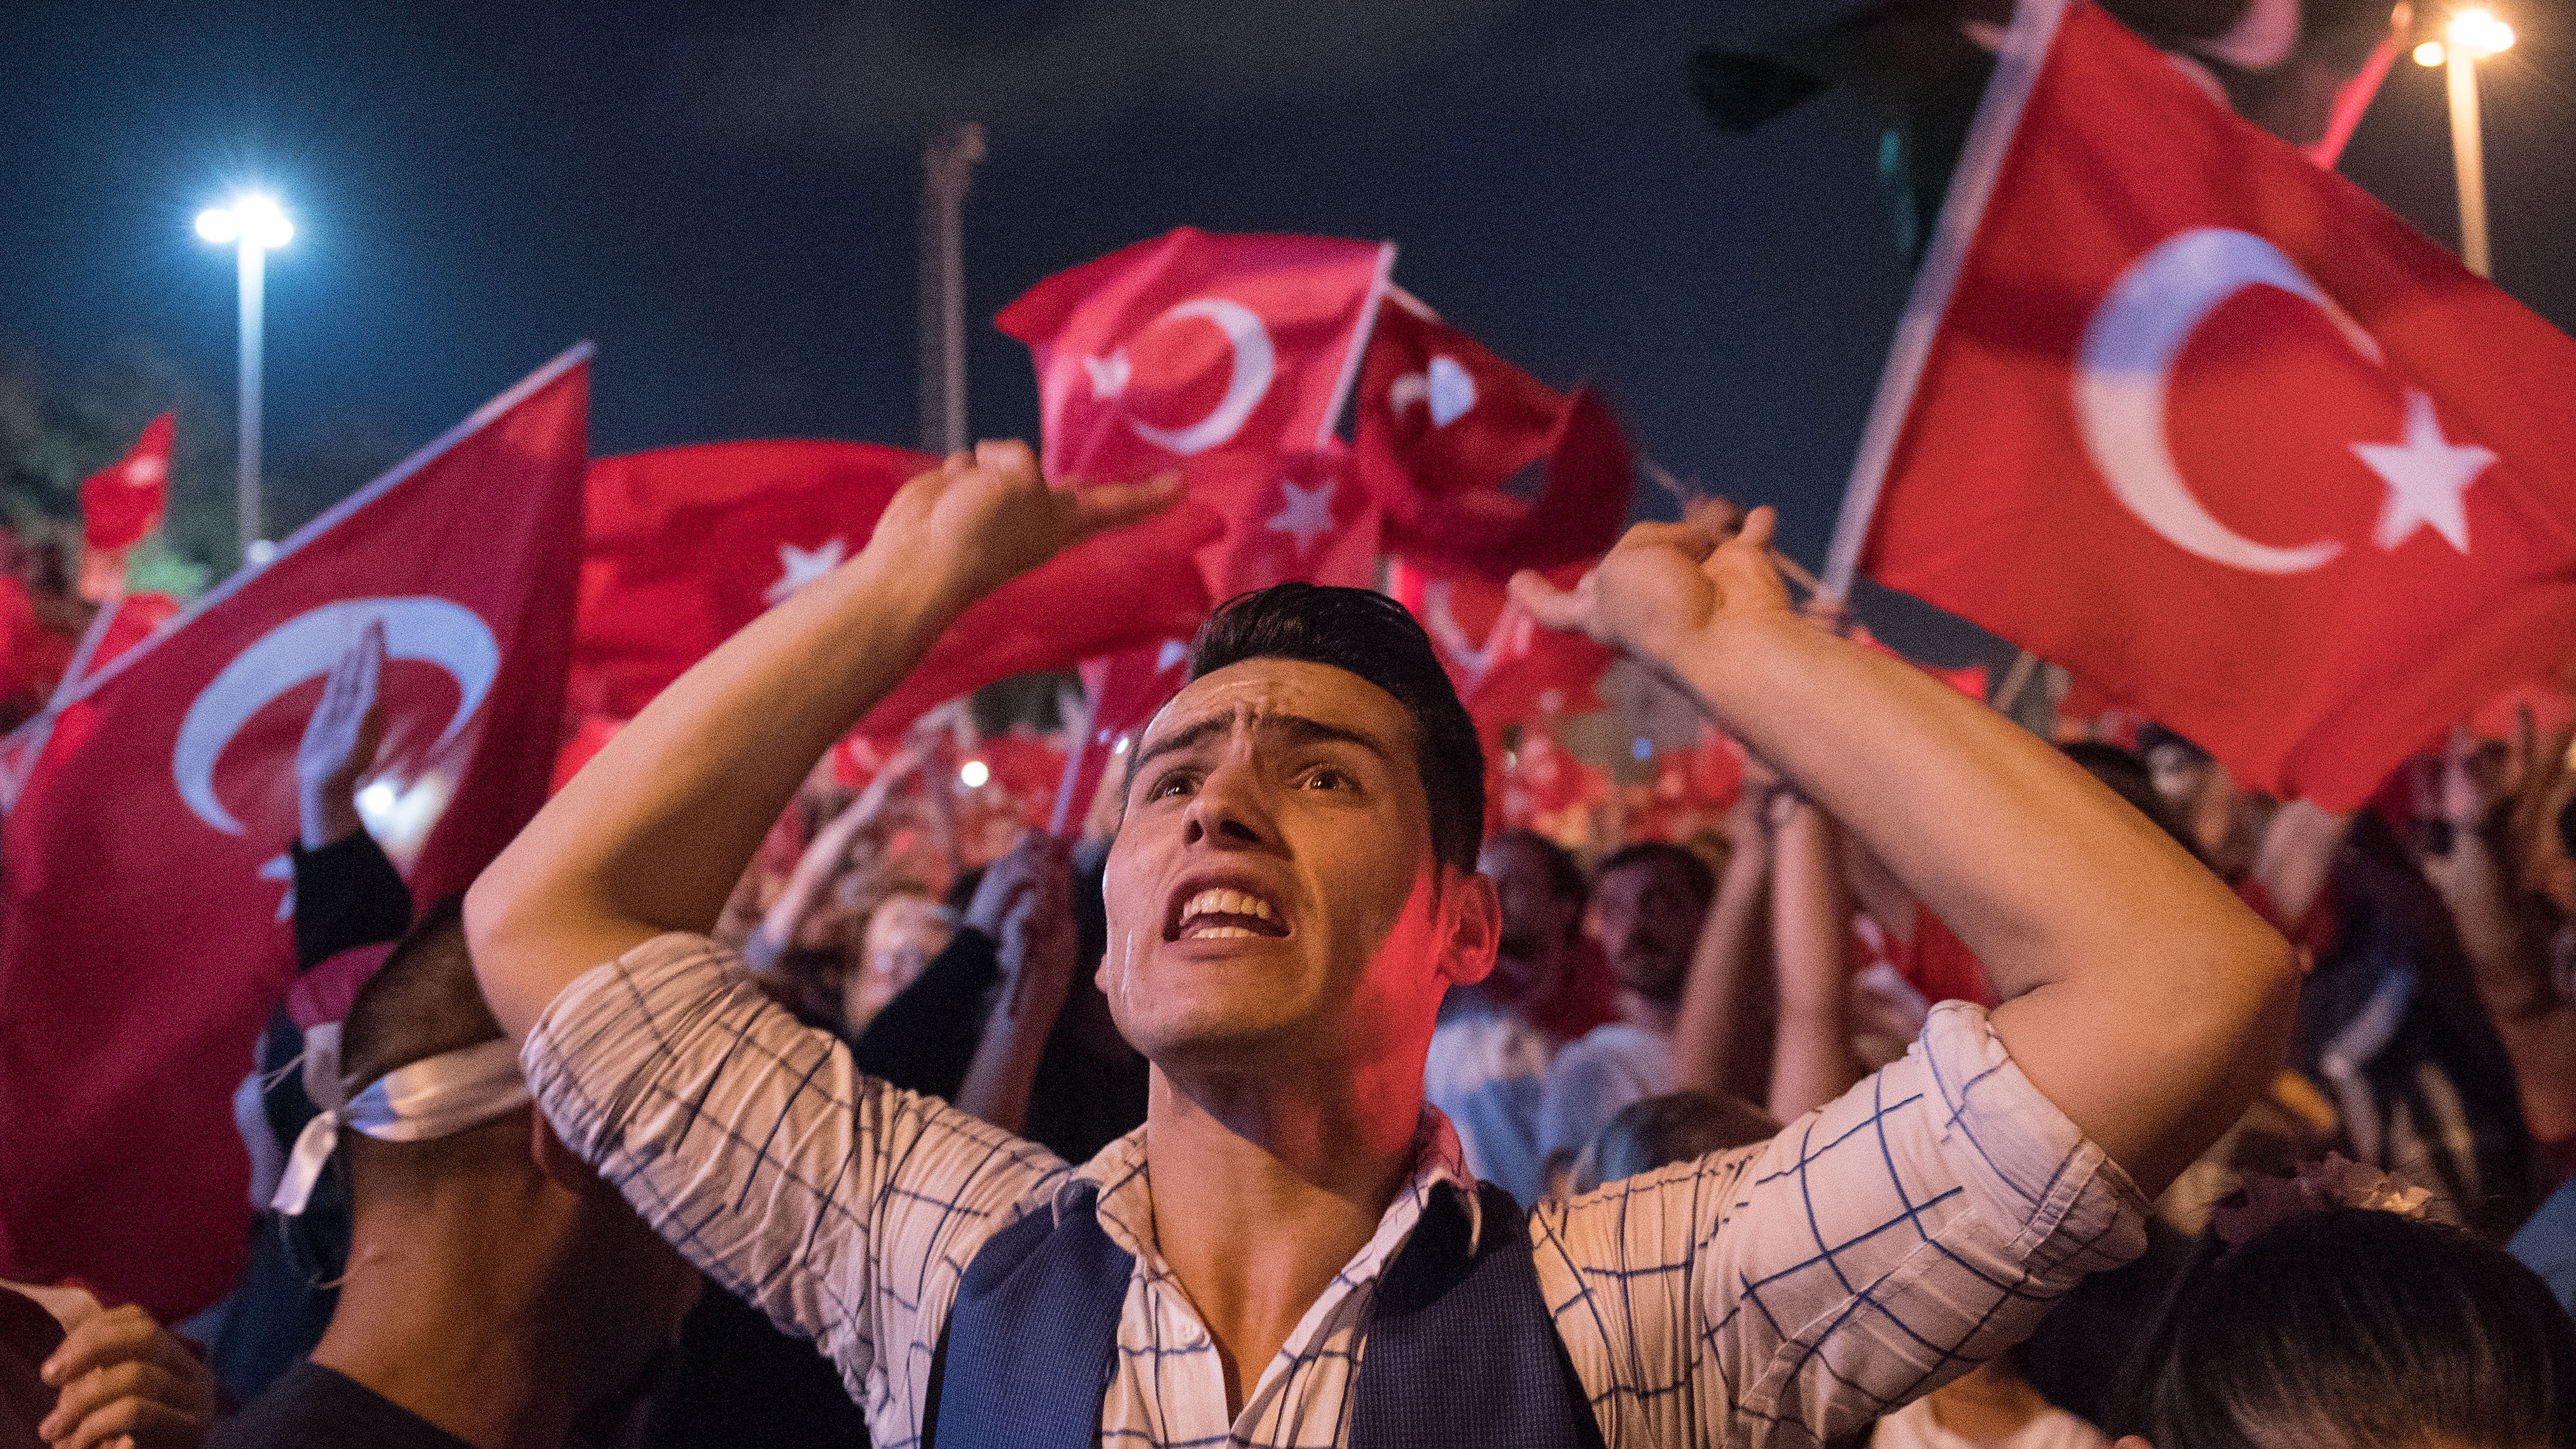 Türken demonstrieren auf dem Taksim Platz in Istanbul, Türkei, mit türkischen Flaggen. | picture alliance / dpa